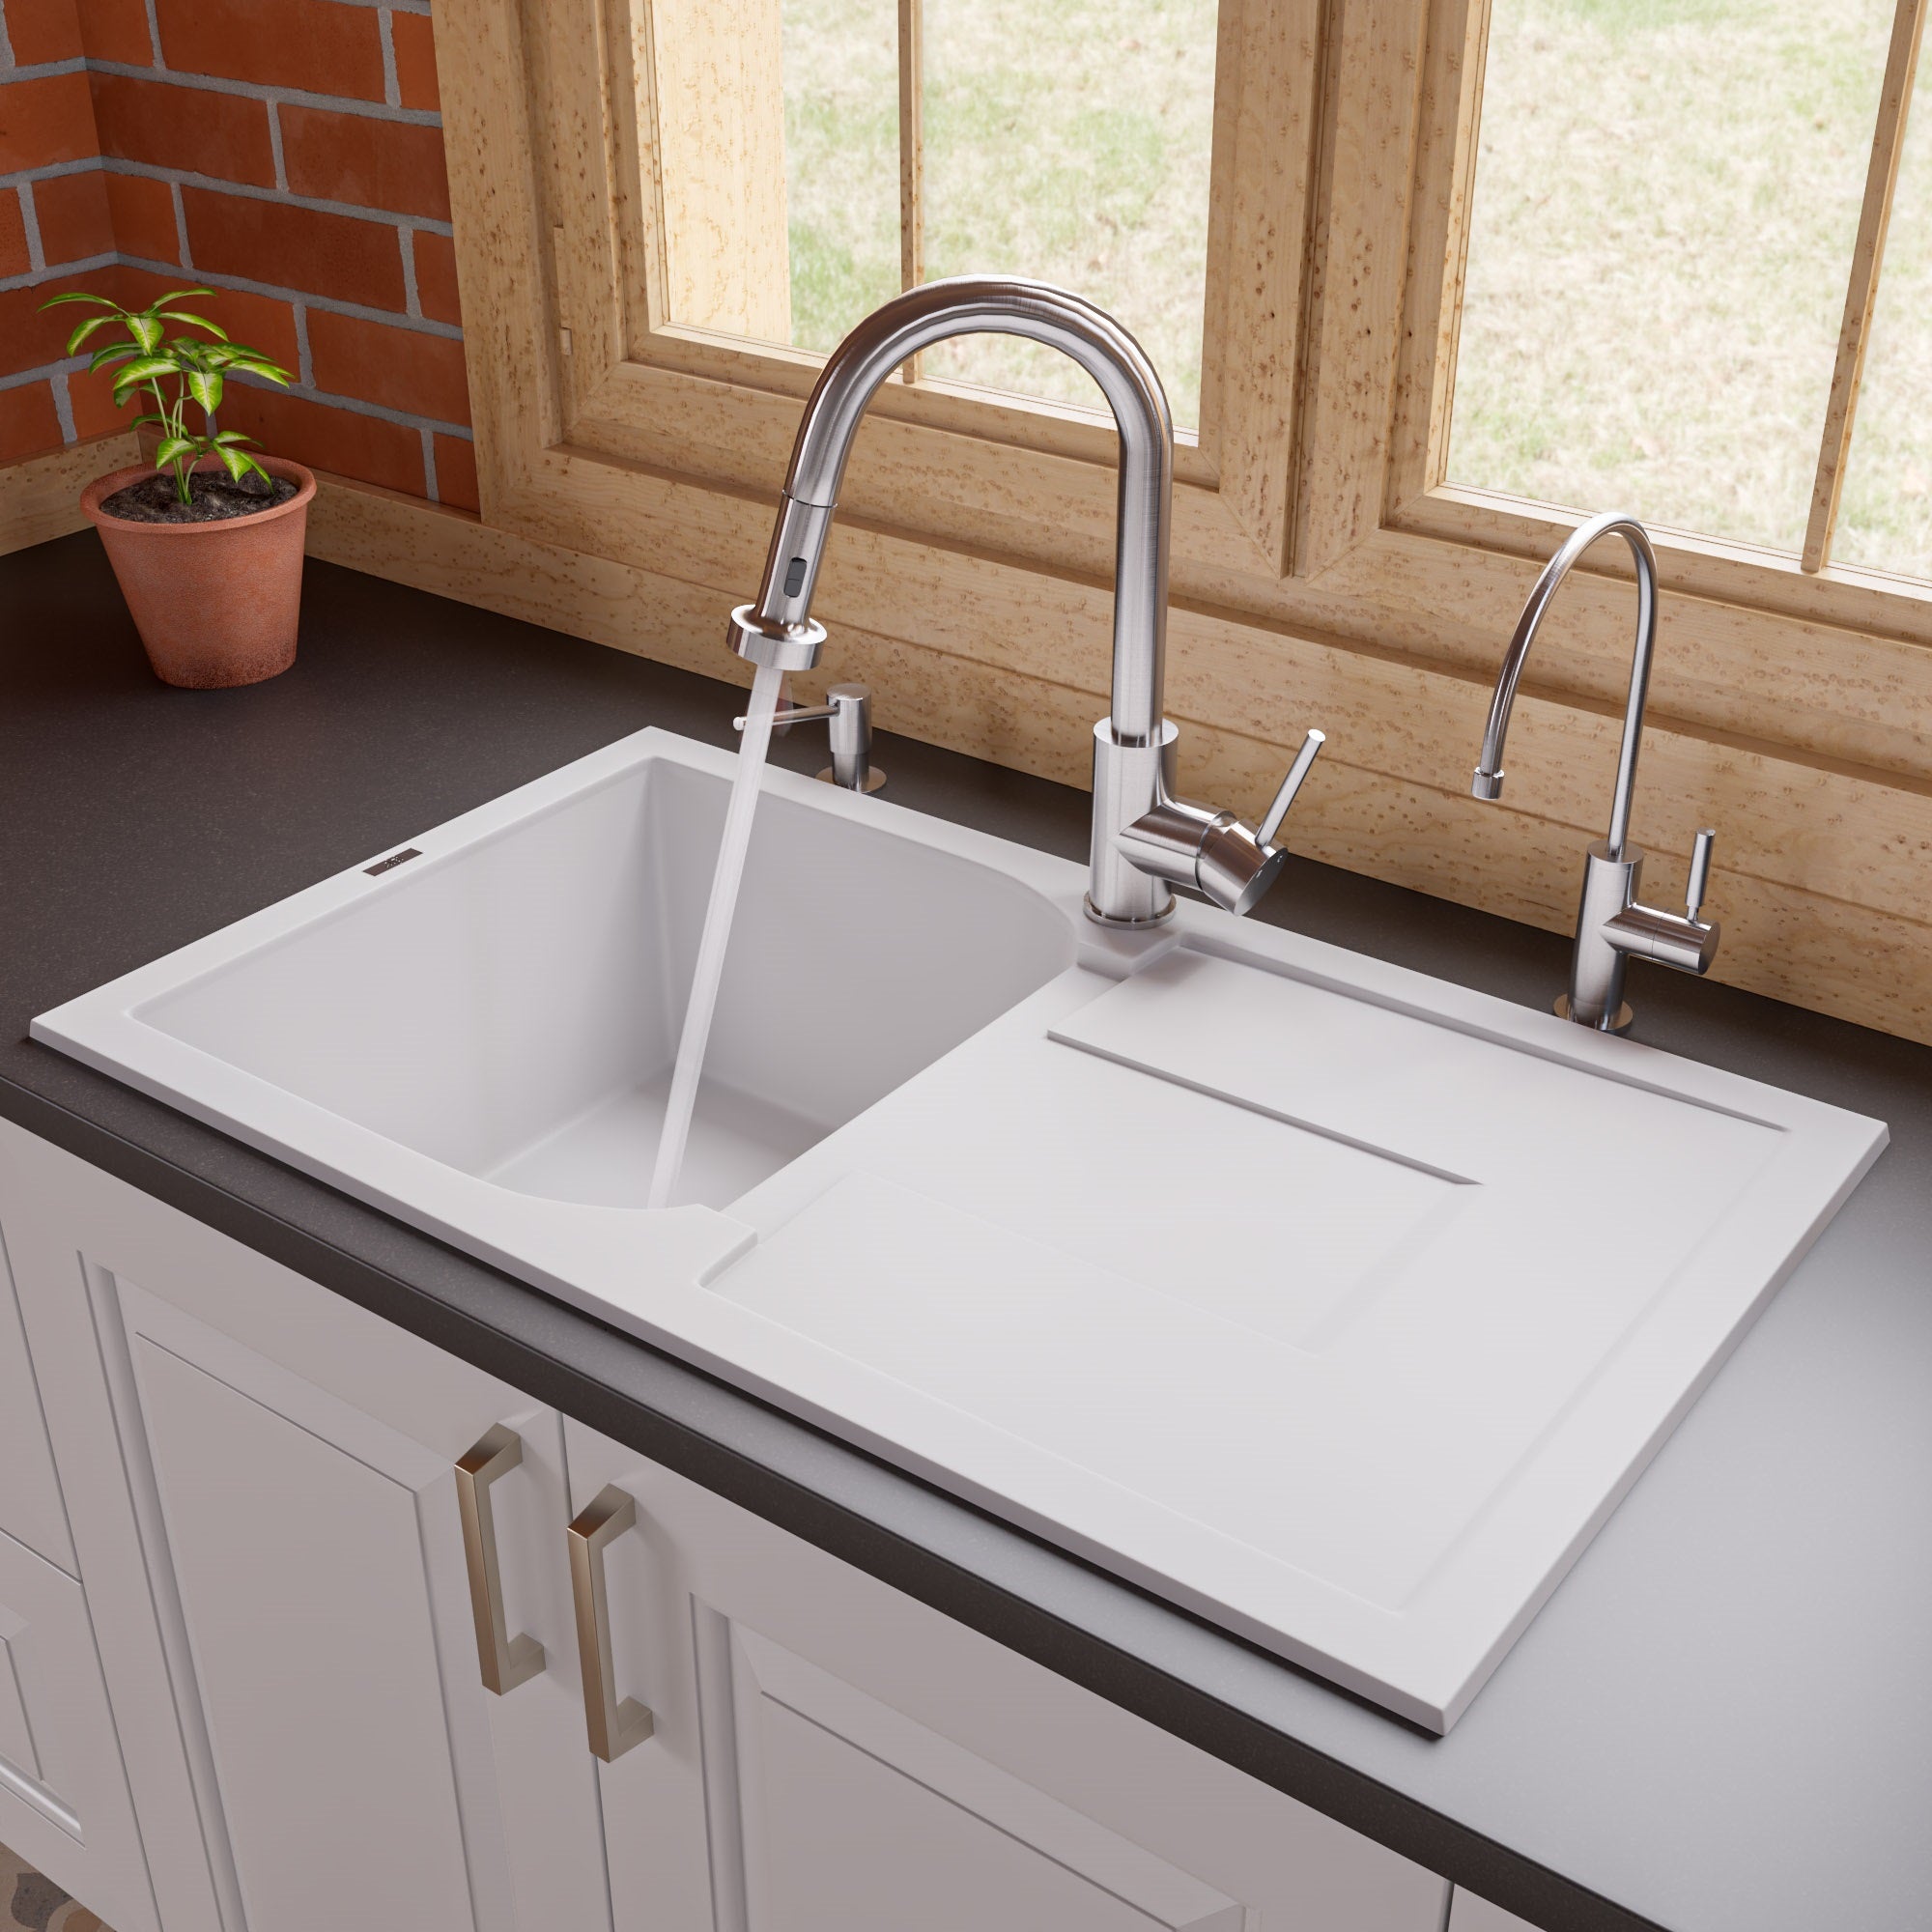 ALFI 34 Single Bowl Granite Composite Kitchen Sink with Drainboard, White,  AB1620DI-W